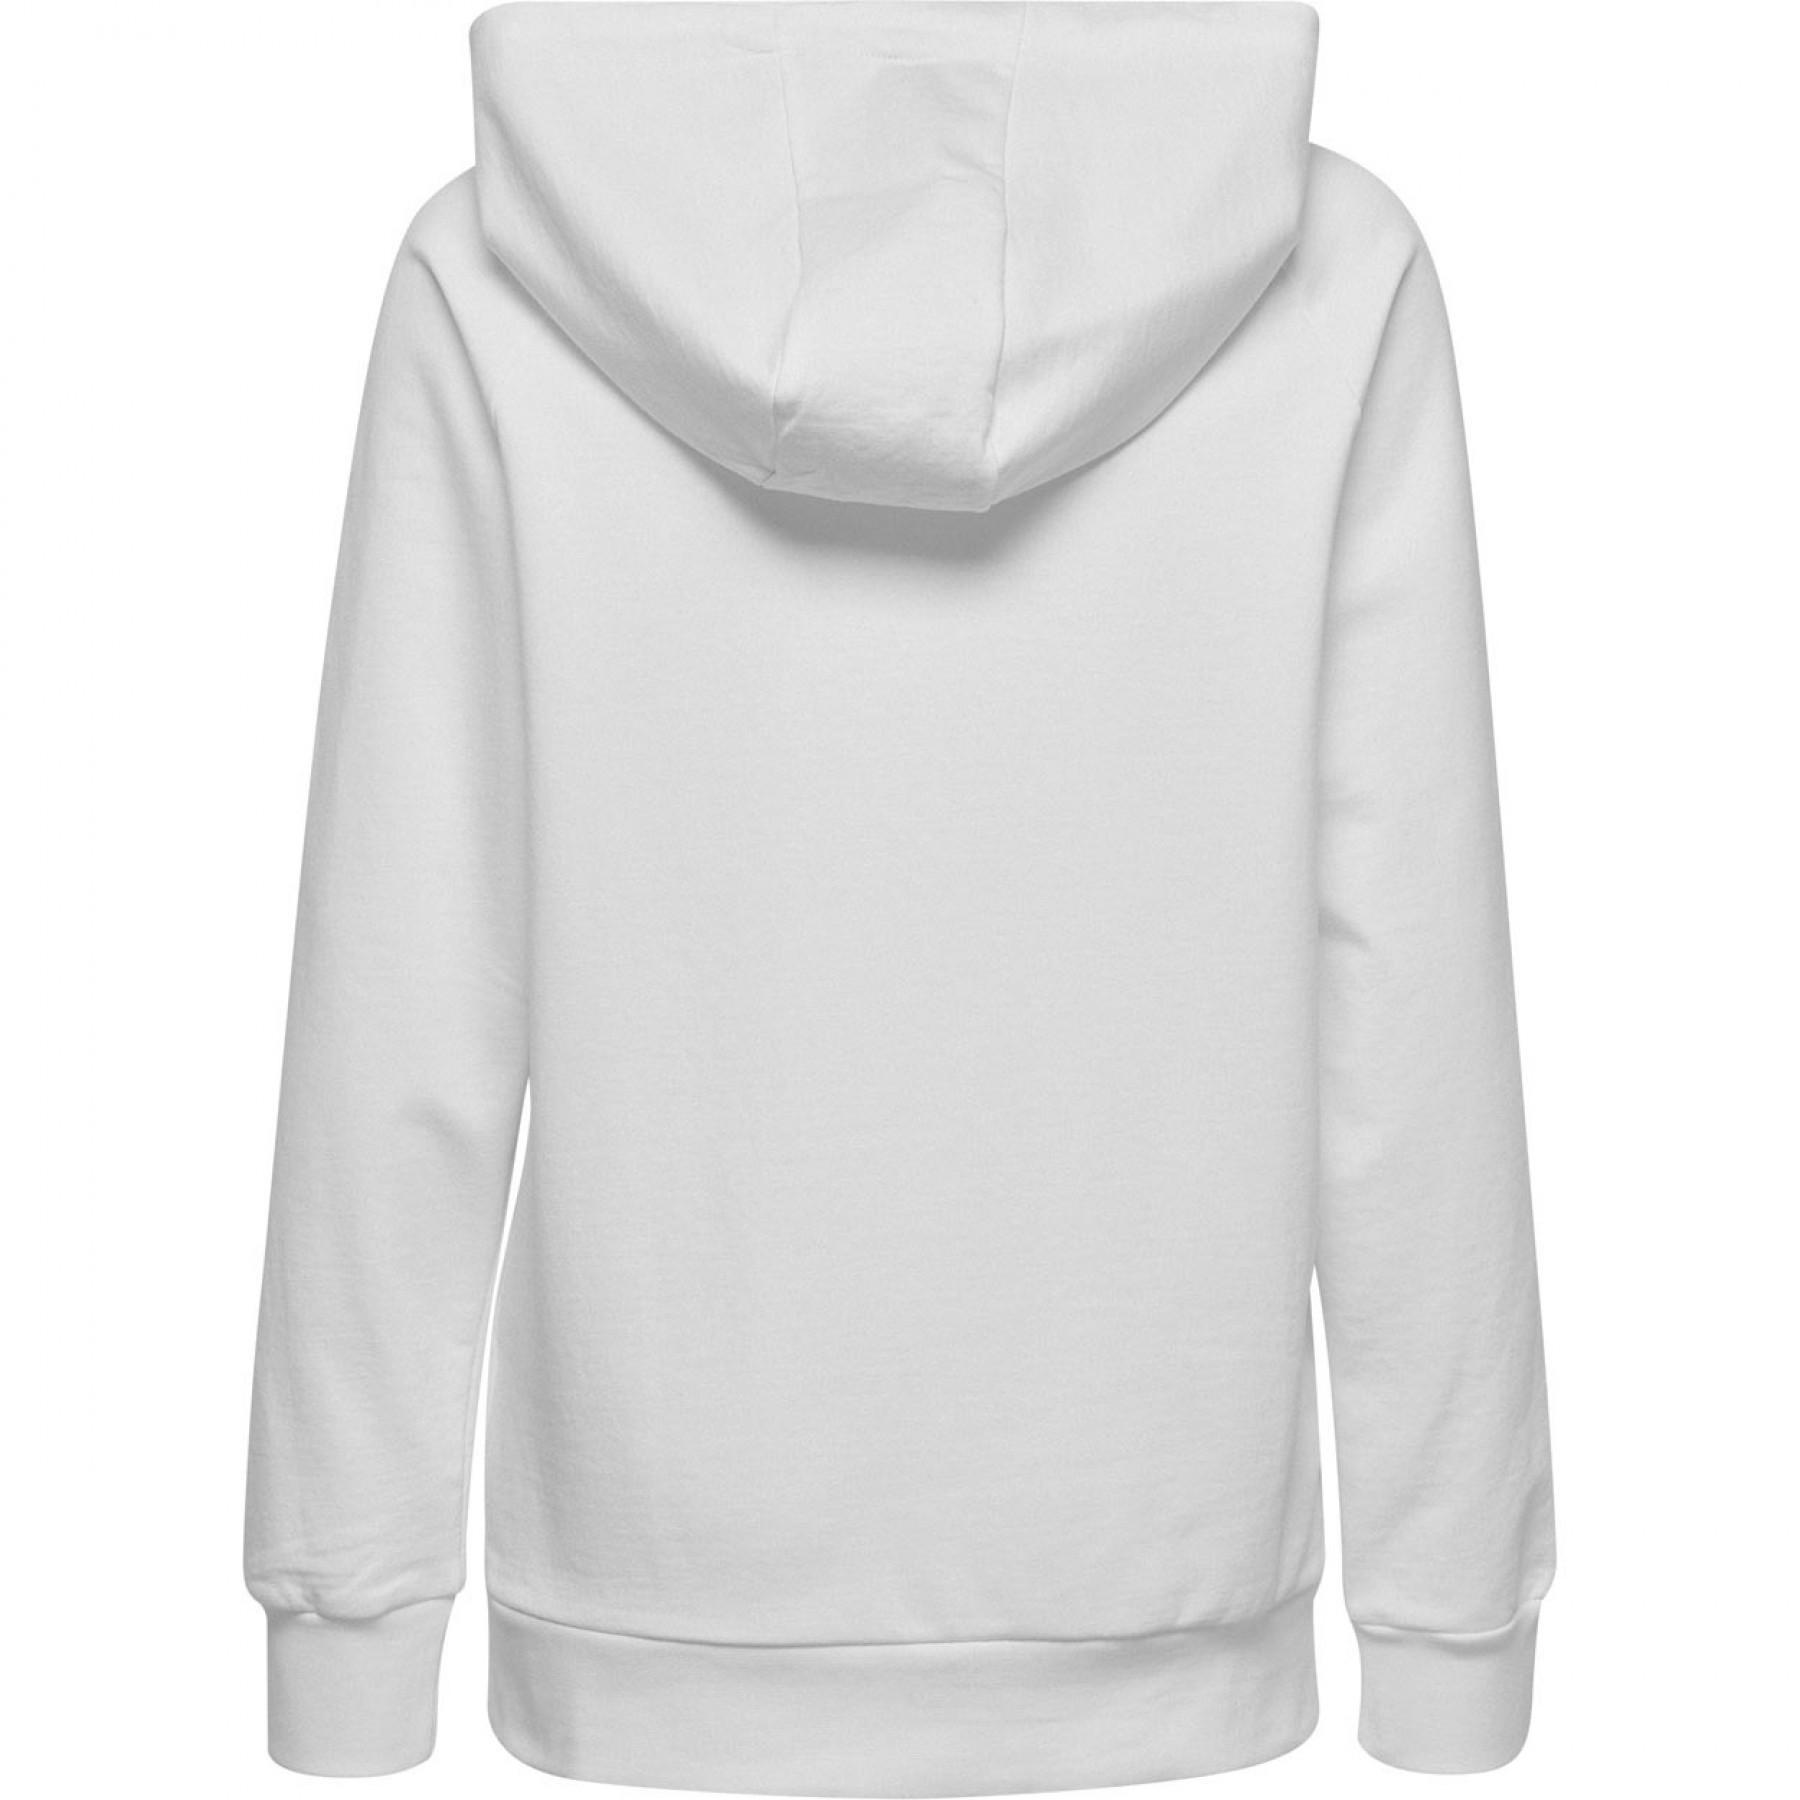 Women's hooded sweatshirt Hummel Zip Cotton